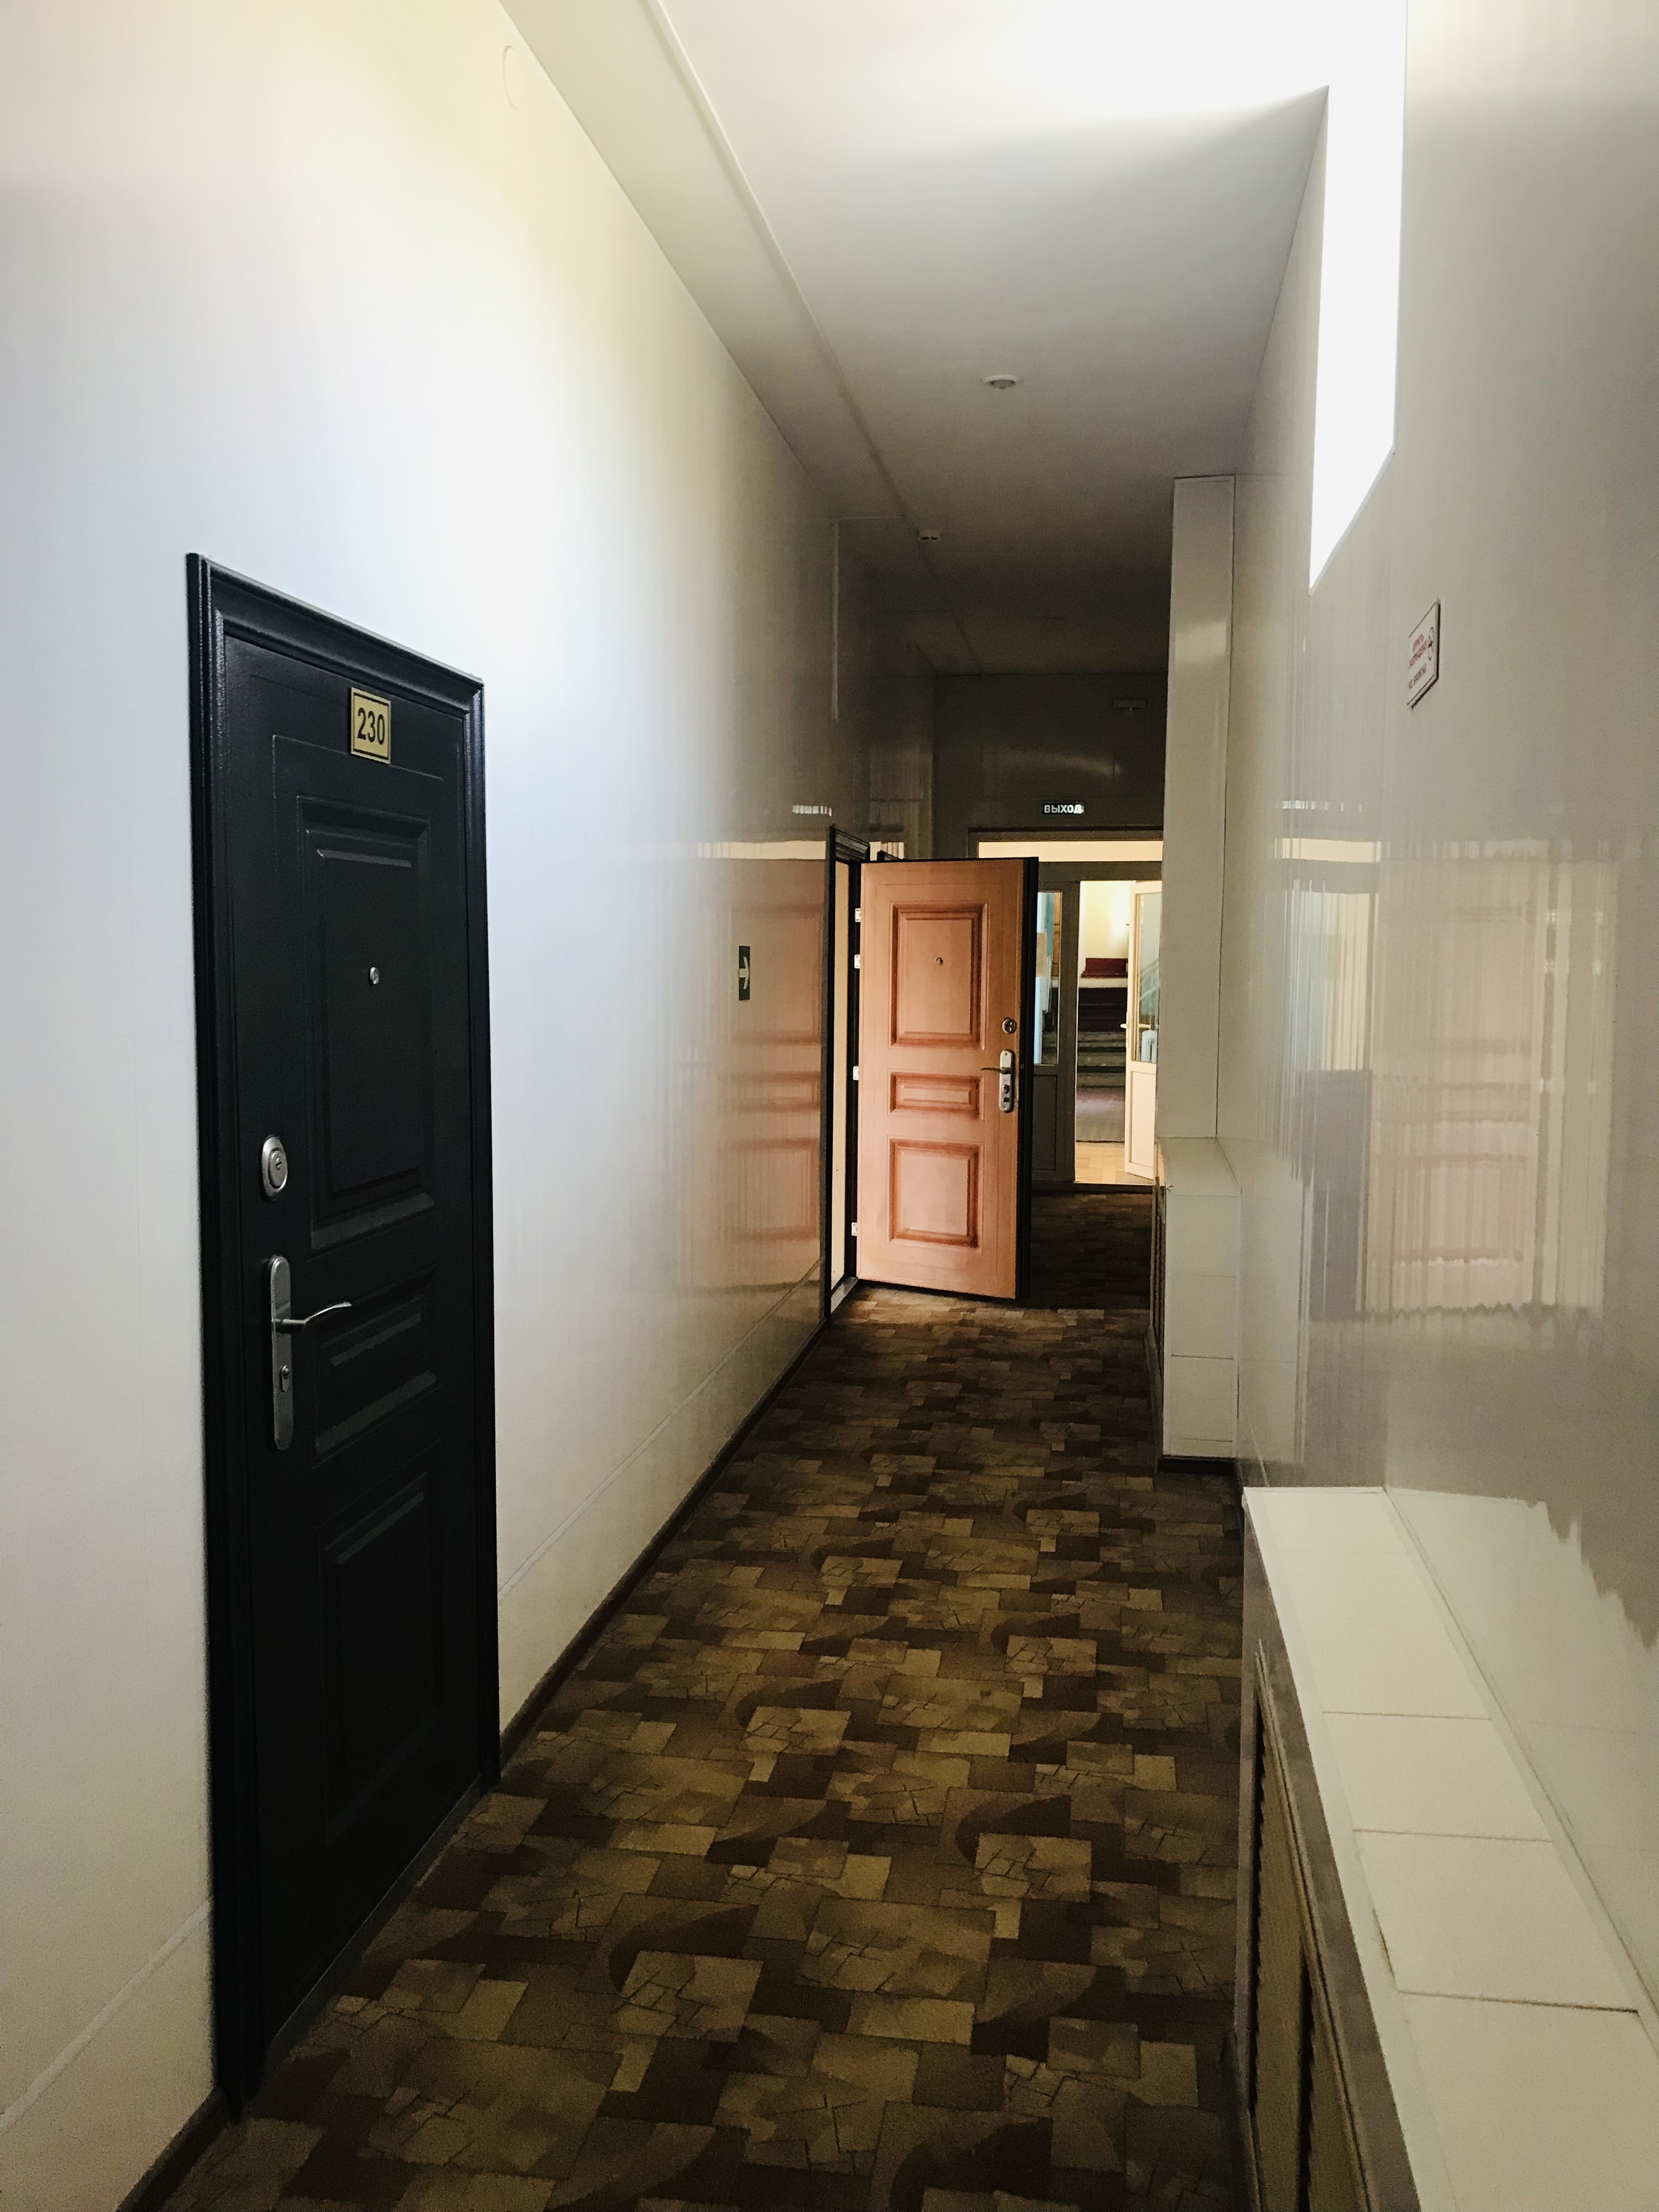 Предлагаем к аренде офисные помещения в центре г. Армавира гостинице Северной, площадью от 15 м², по ул.Мира 47 напрямую от собственника._1